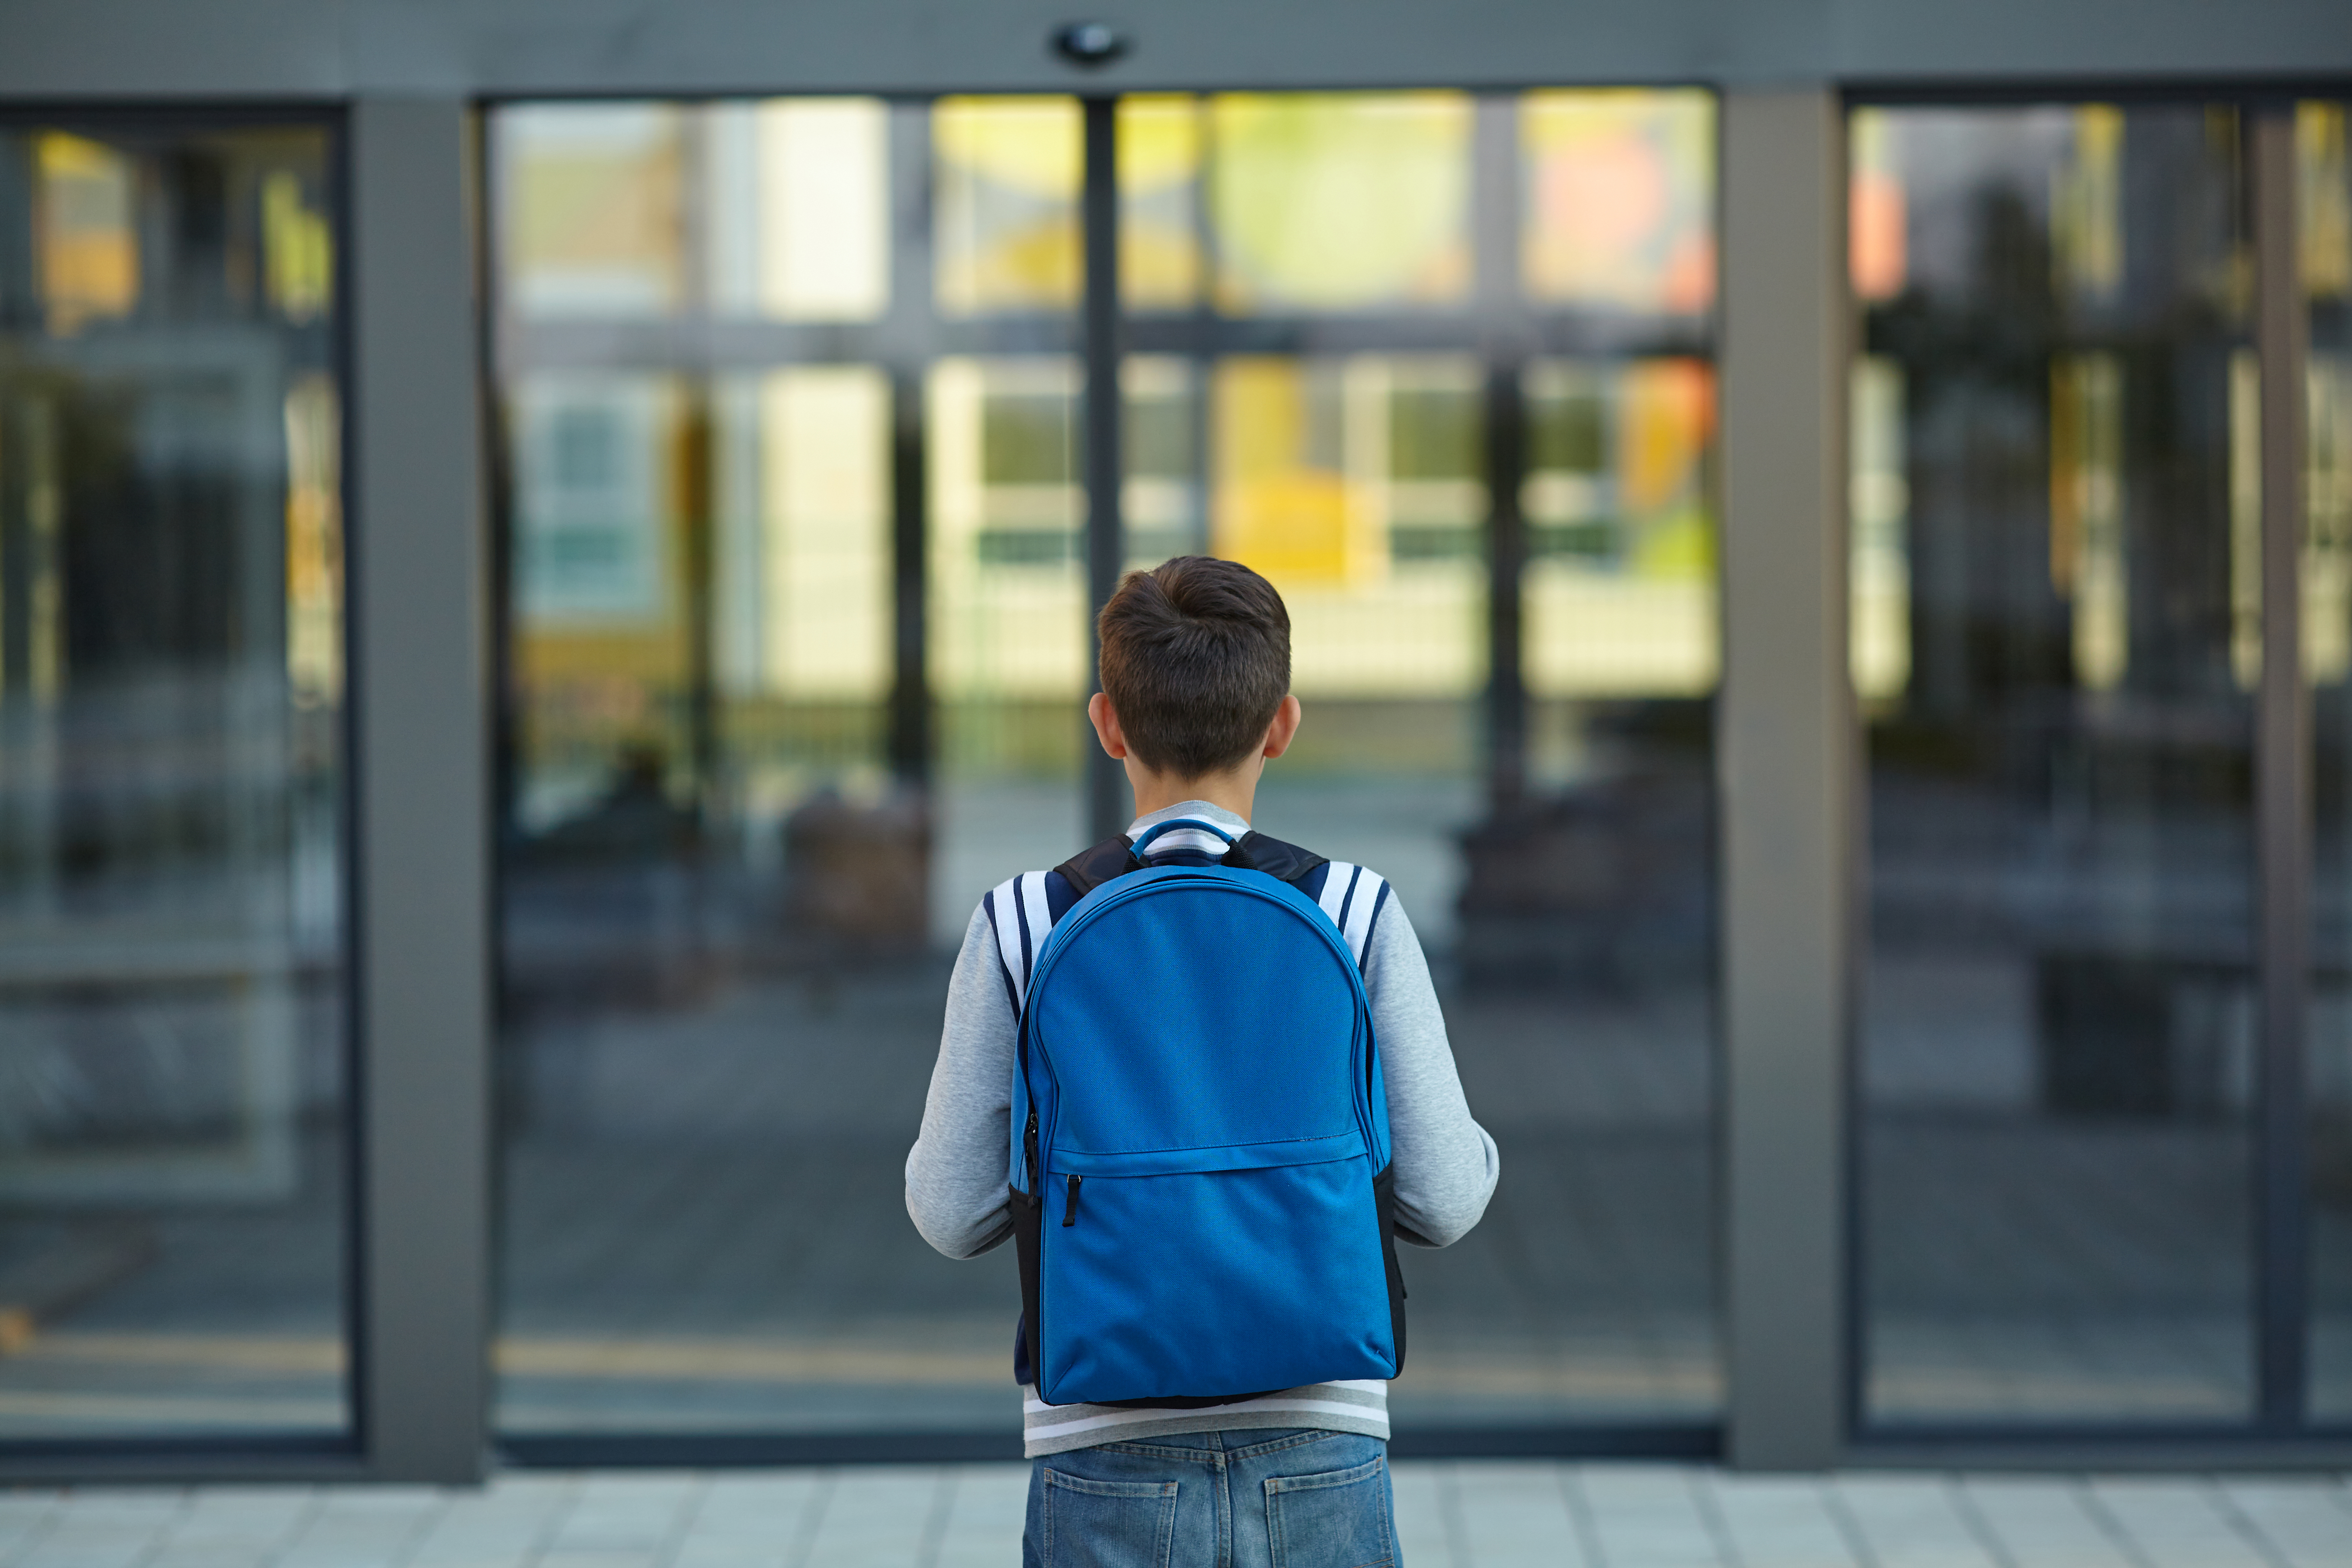 Boy stands in front of school doors